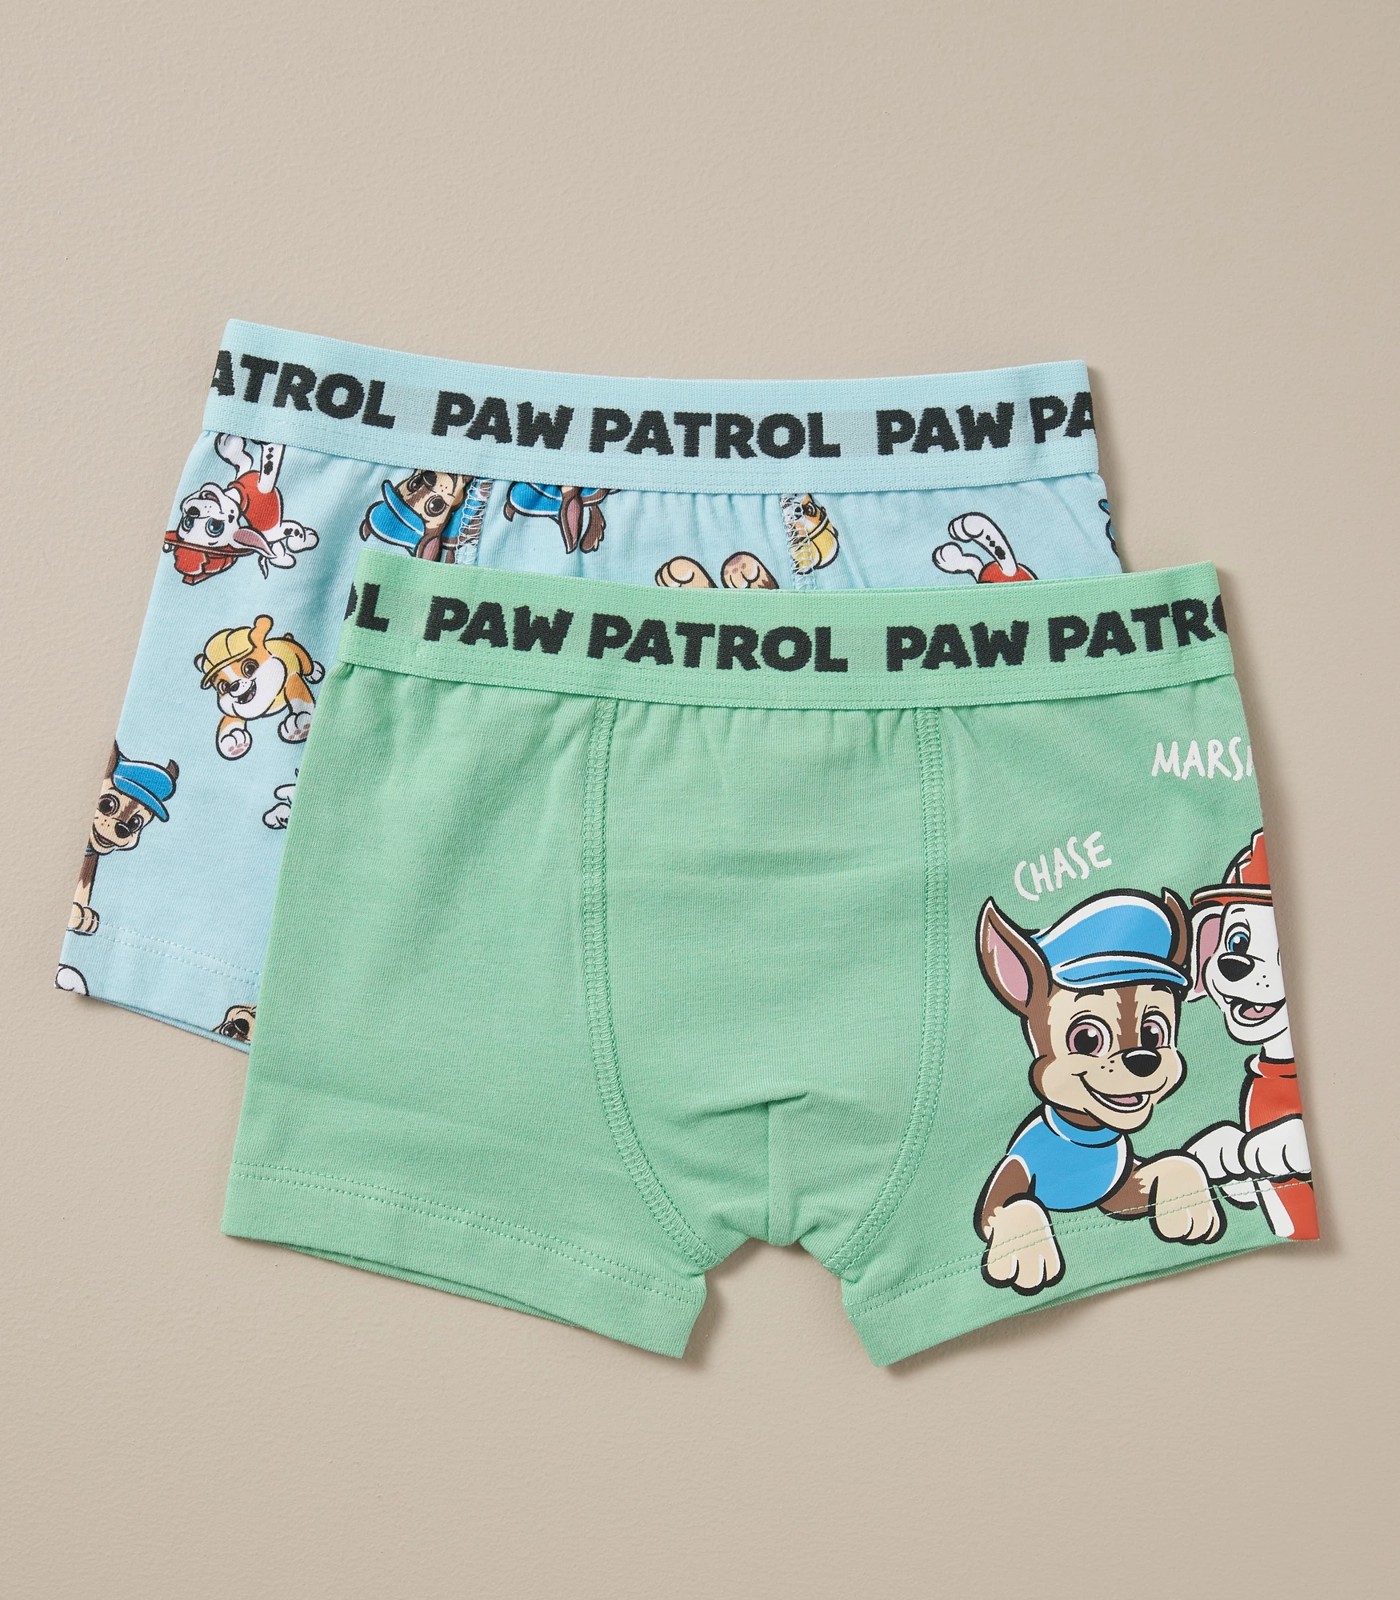 PAW Patrol Boys Underwear, 5 Pack Boxer Briefs Sizes 4-6